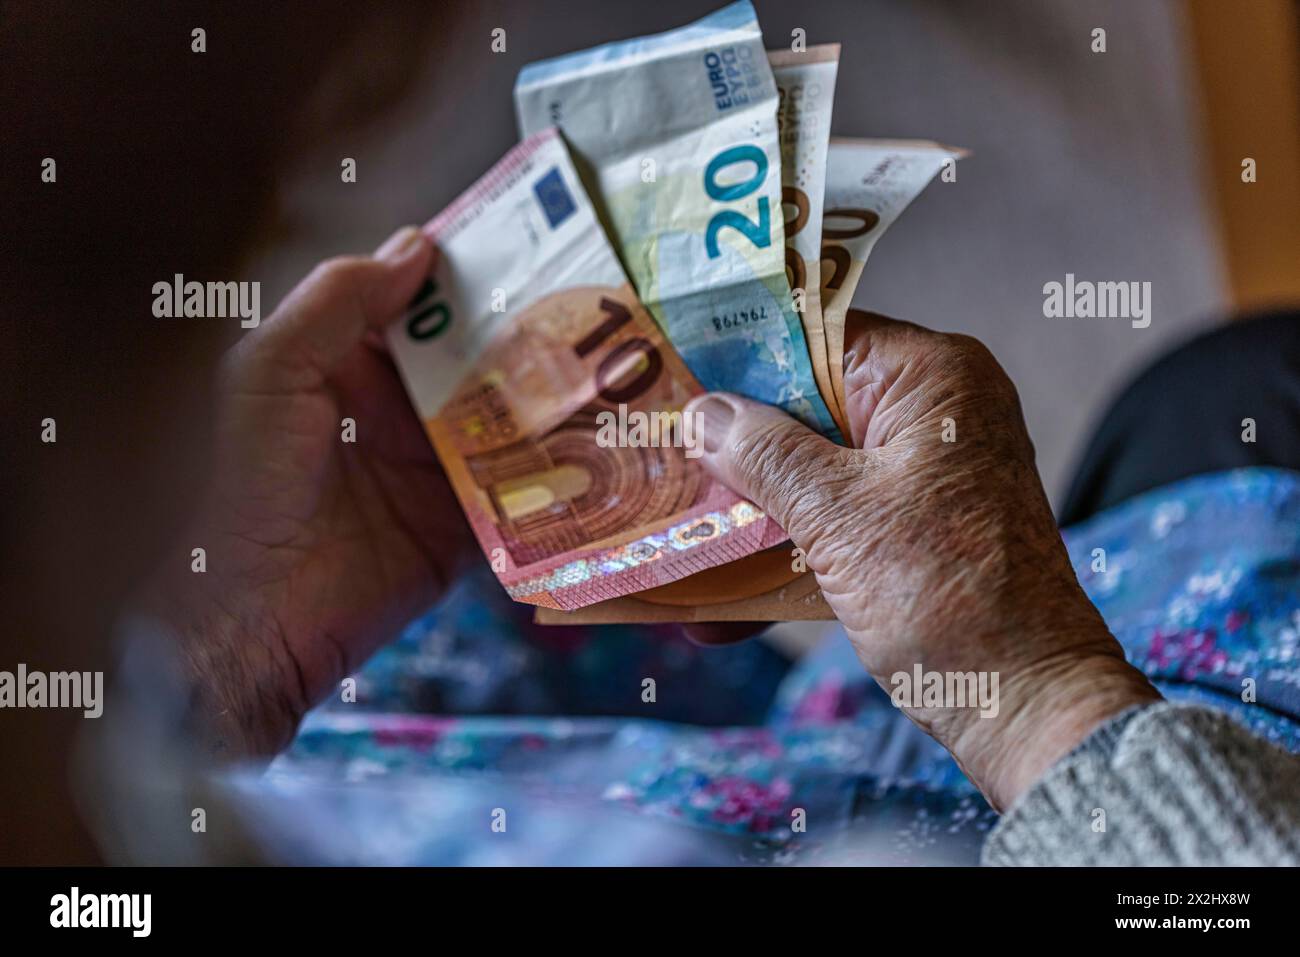 Une personne âgée aux mains froissées compte son argent à la maison dans son appartement et tient les billets de banque dans sa main, Cologne, Rhénanie du Nord-Westphalie, Allemagne Banque D'Images